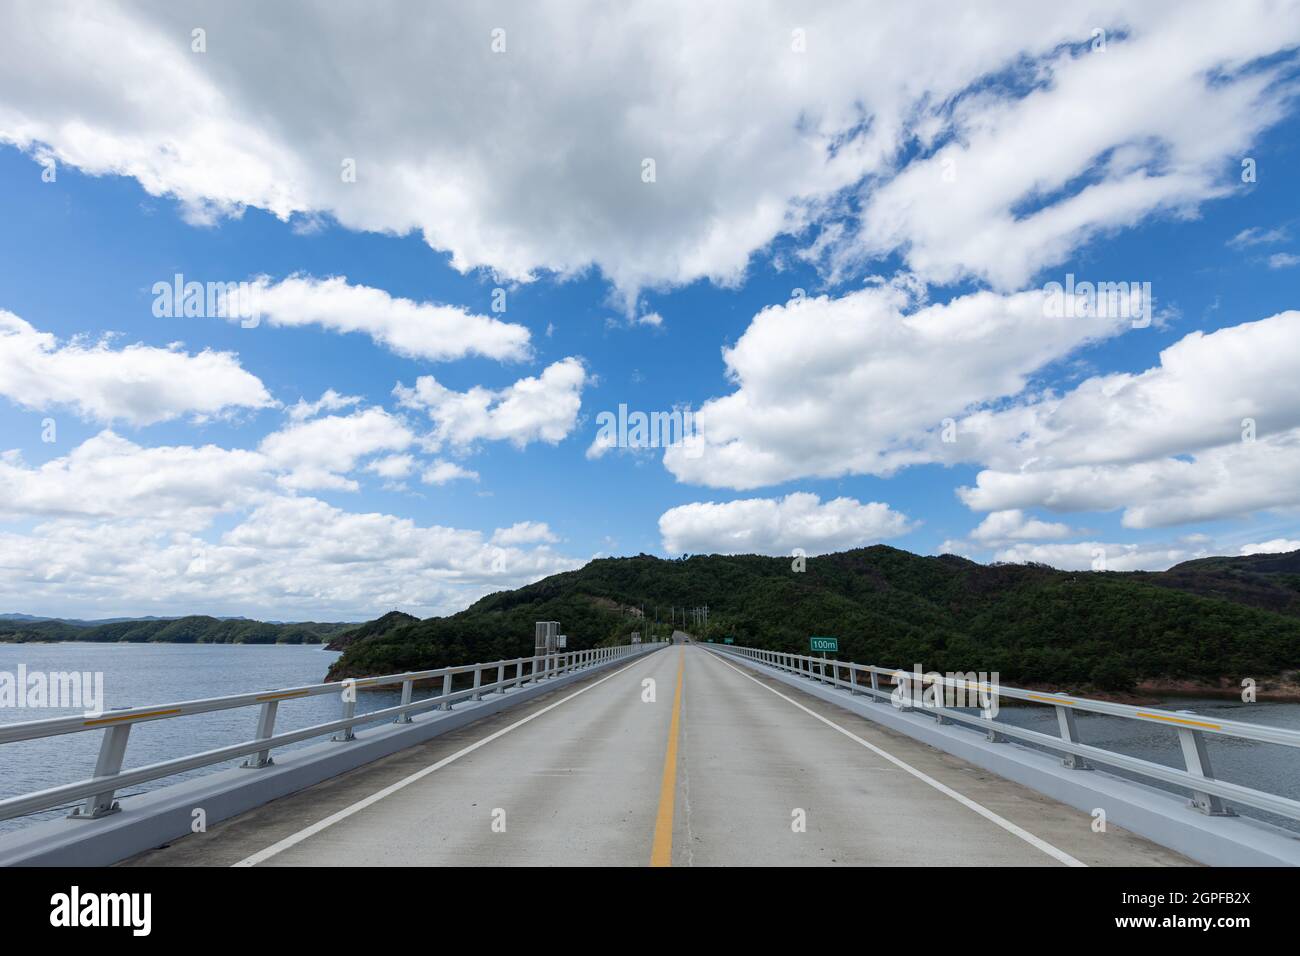 Paysage de beau ciel bleu sur le pont avec des nuages blancs, réservoir de barrage d'Imdong, Corée Banque D'Images